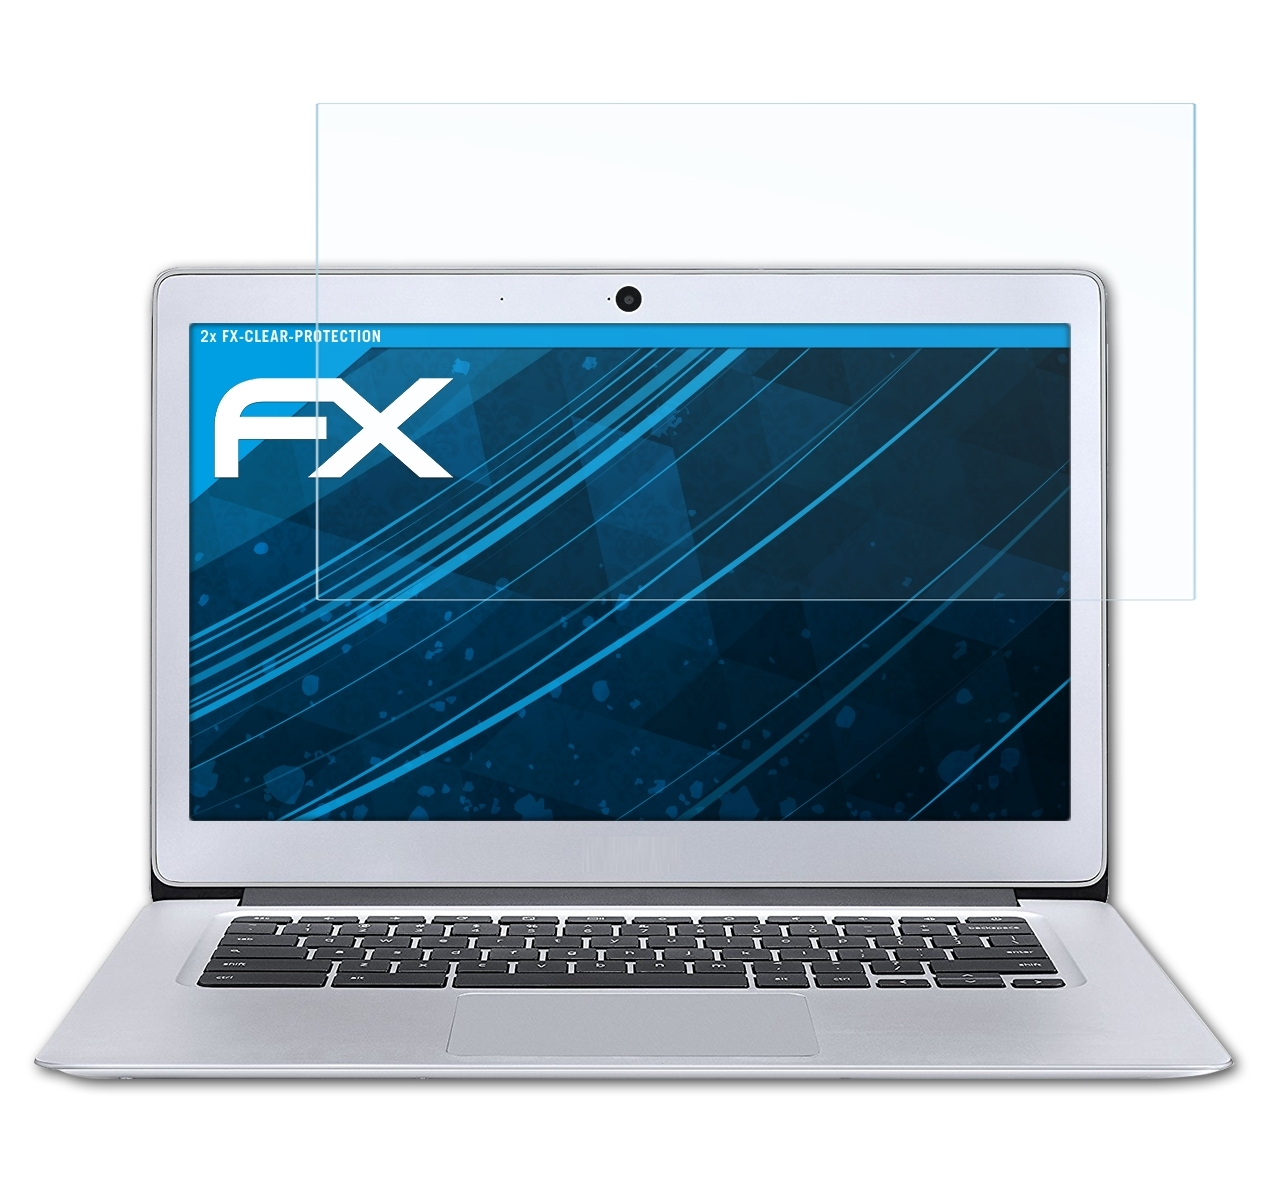 (CB3-431)) ATFOLIX 14 2x Acer FX-Clear Chromebook Displayschutz(für